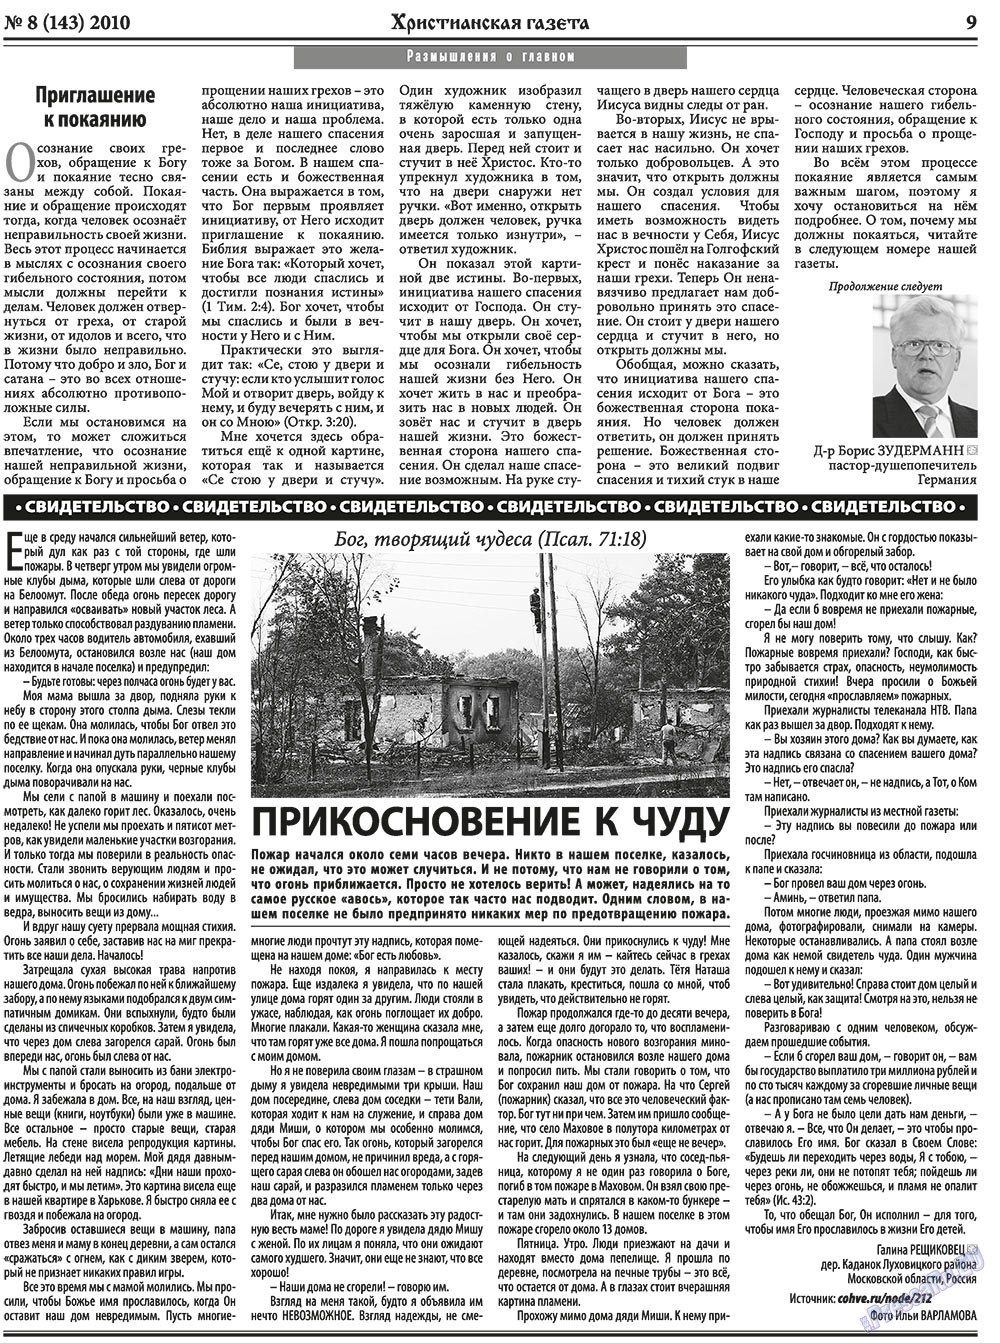 Христианская газета, газета. 2010 №8 стр.9